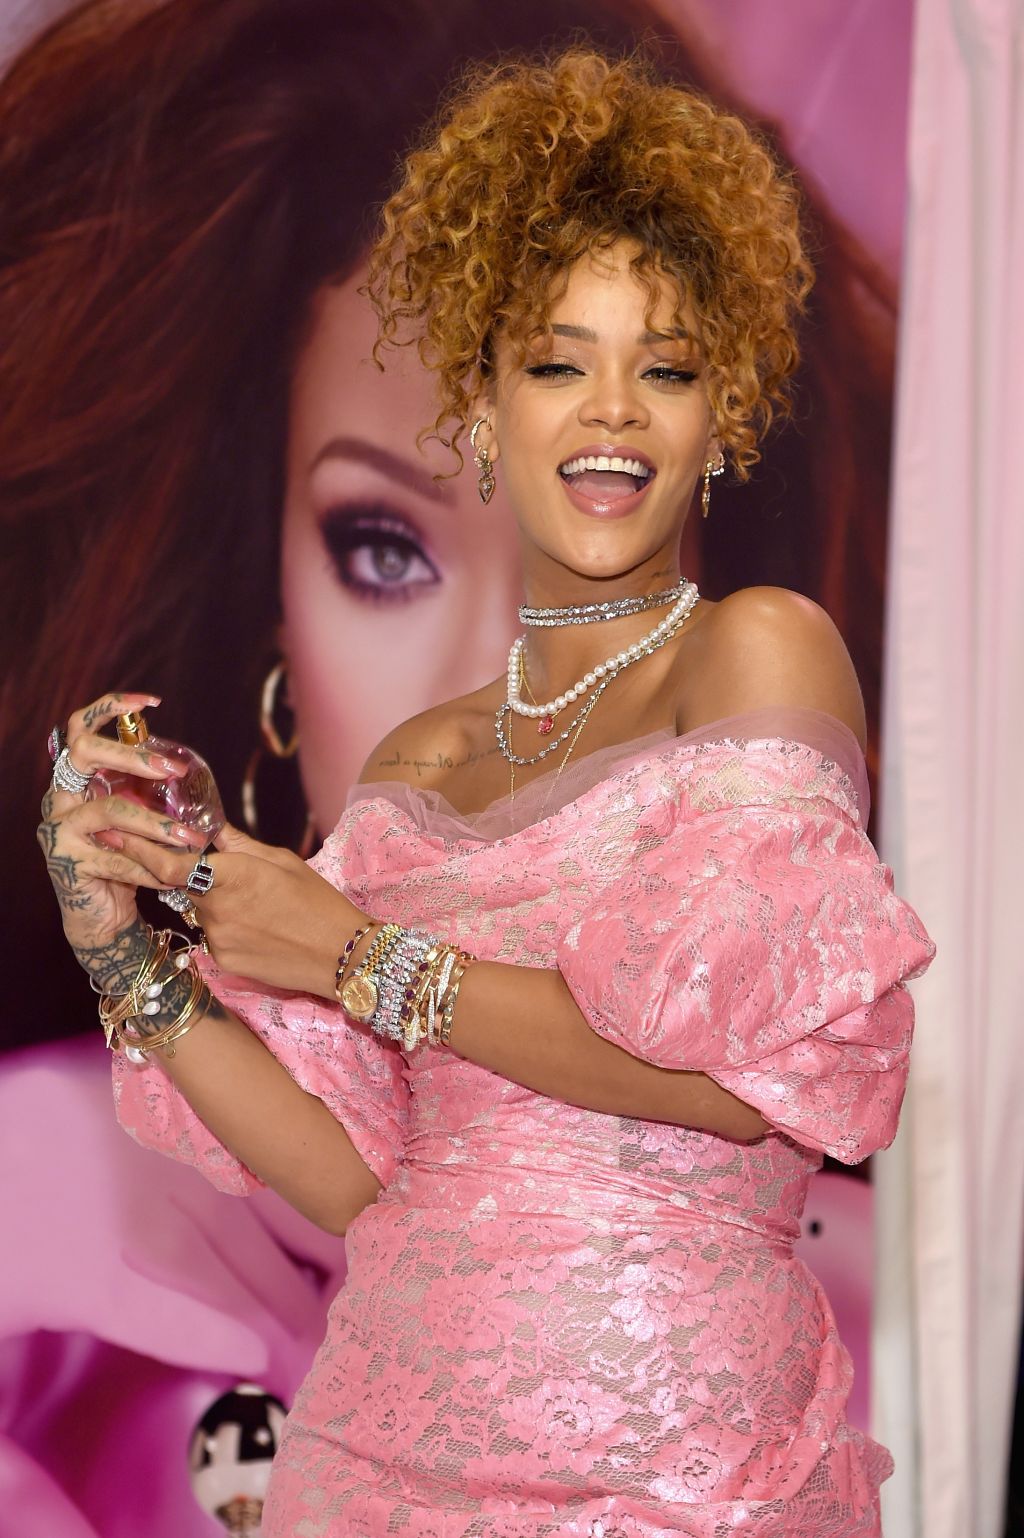 Rihanna at 'RiRi' launch in Brooklyn